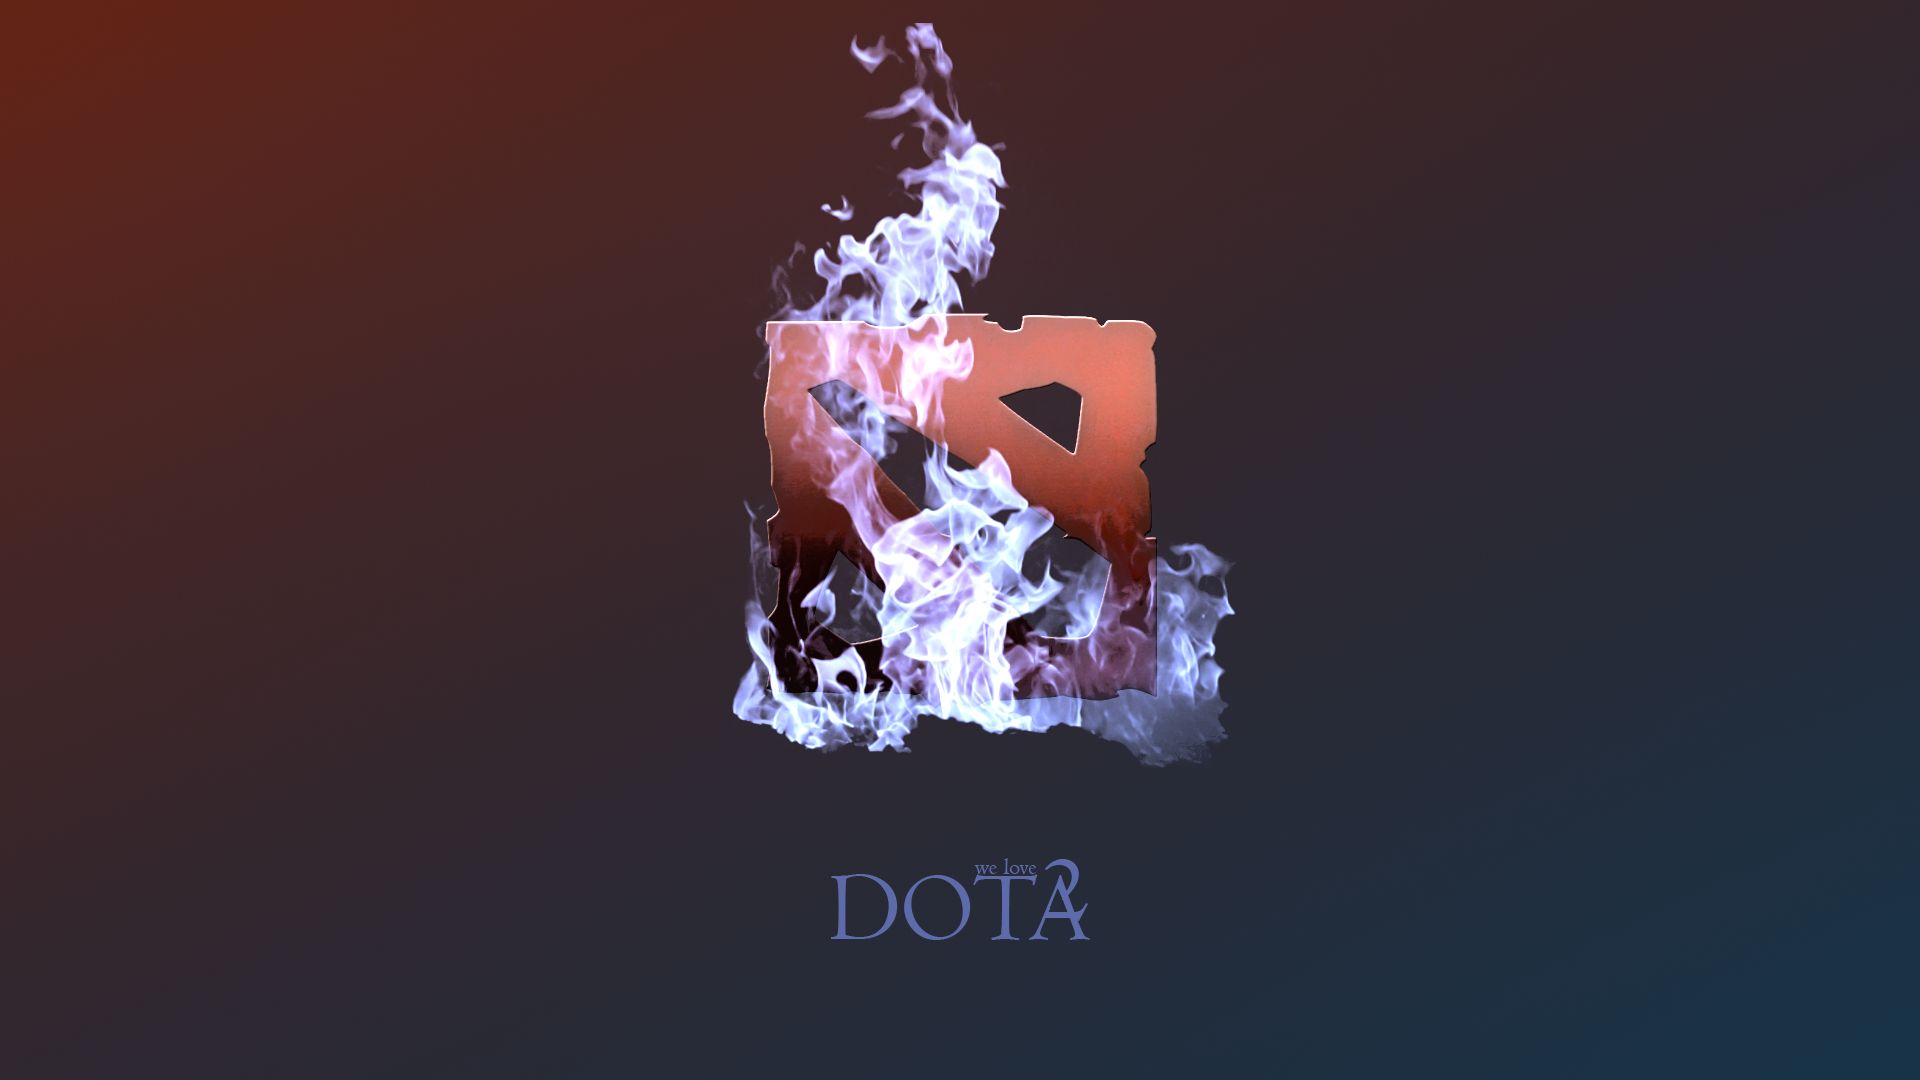 dota 2 logo wallpaper hd